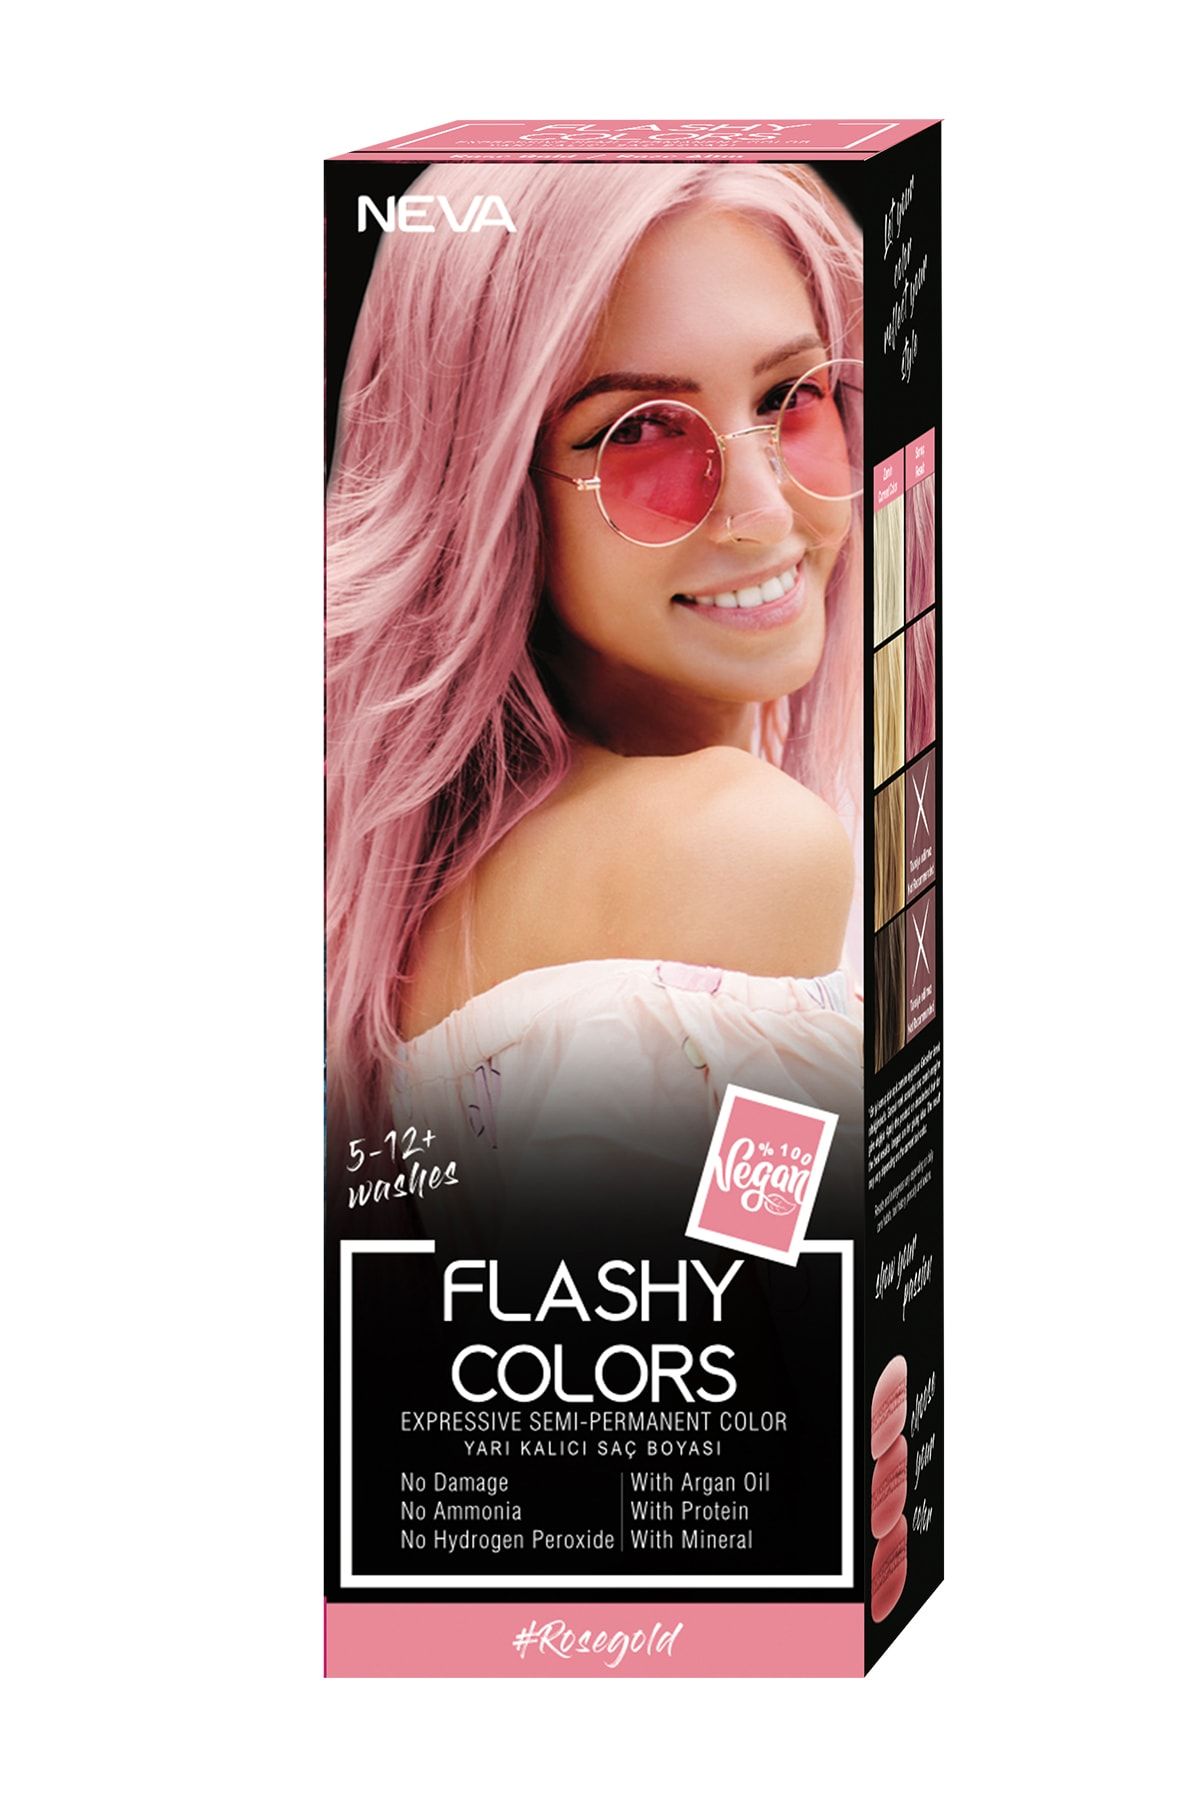 Neva Flashy Colors Yarı Kalıcı Saç Boyası Rose Gold / Roze Altın 100 ml